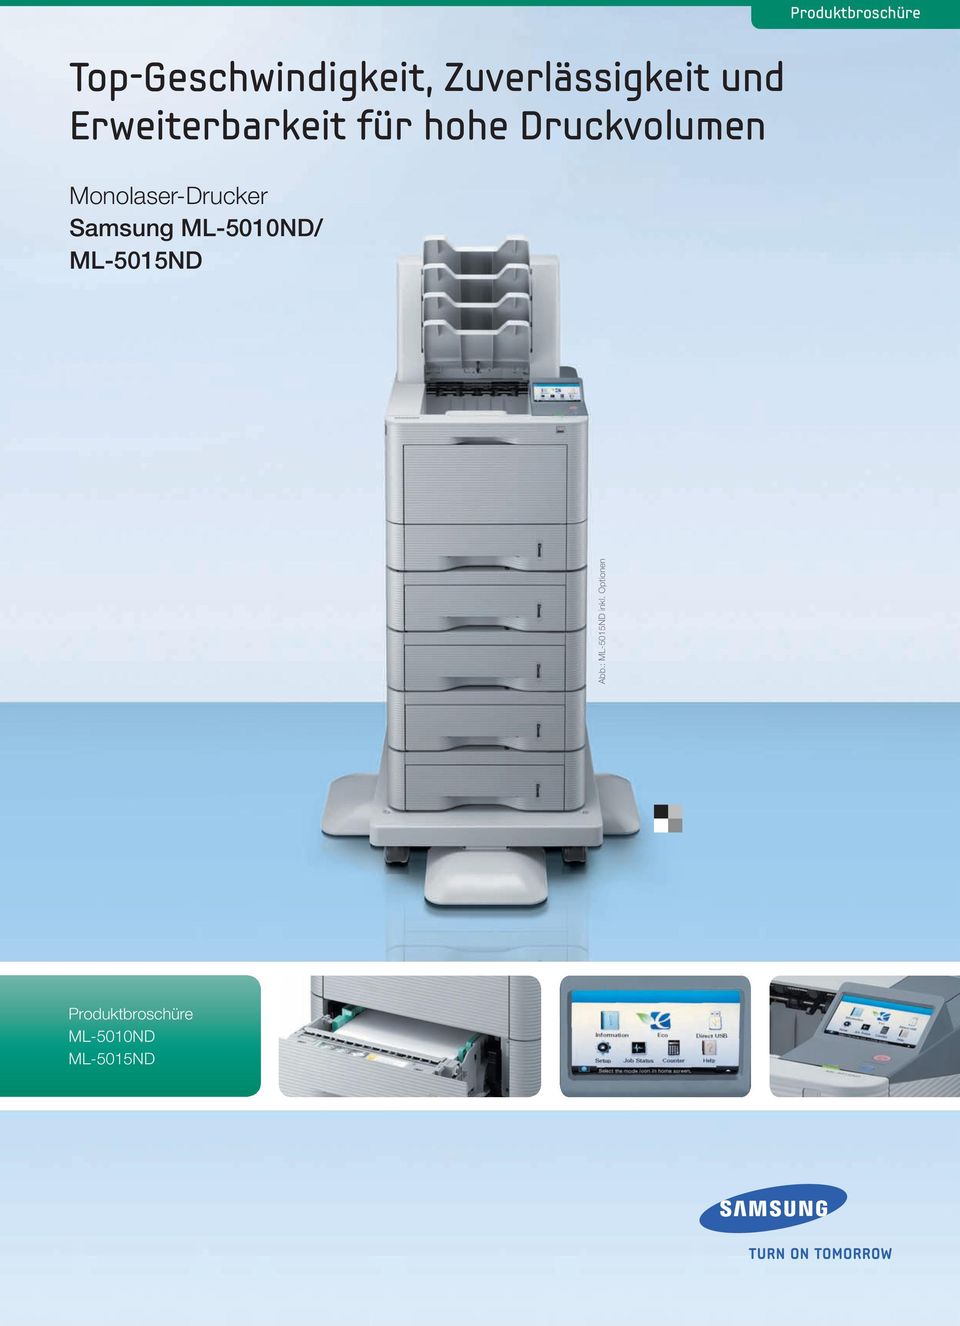 Druckvolumen Monolaser-Drucker Samsung ML-5010ND/